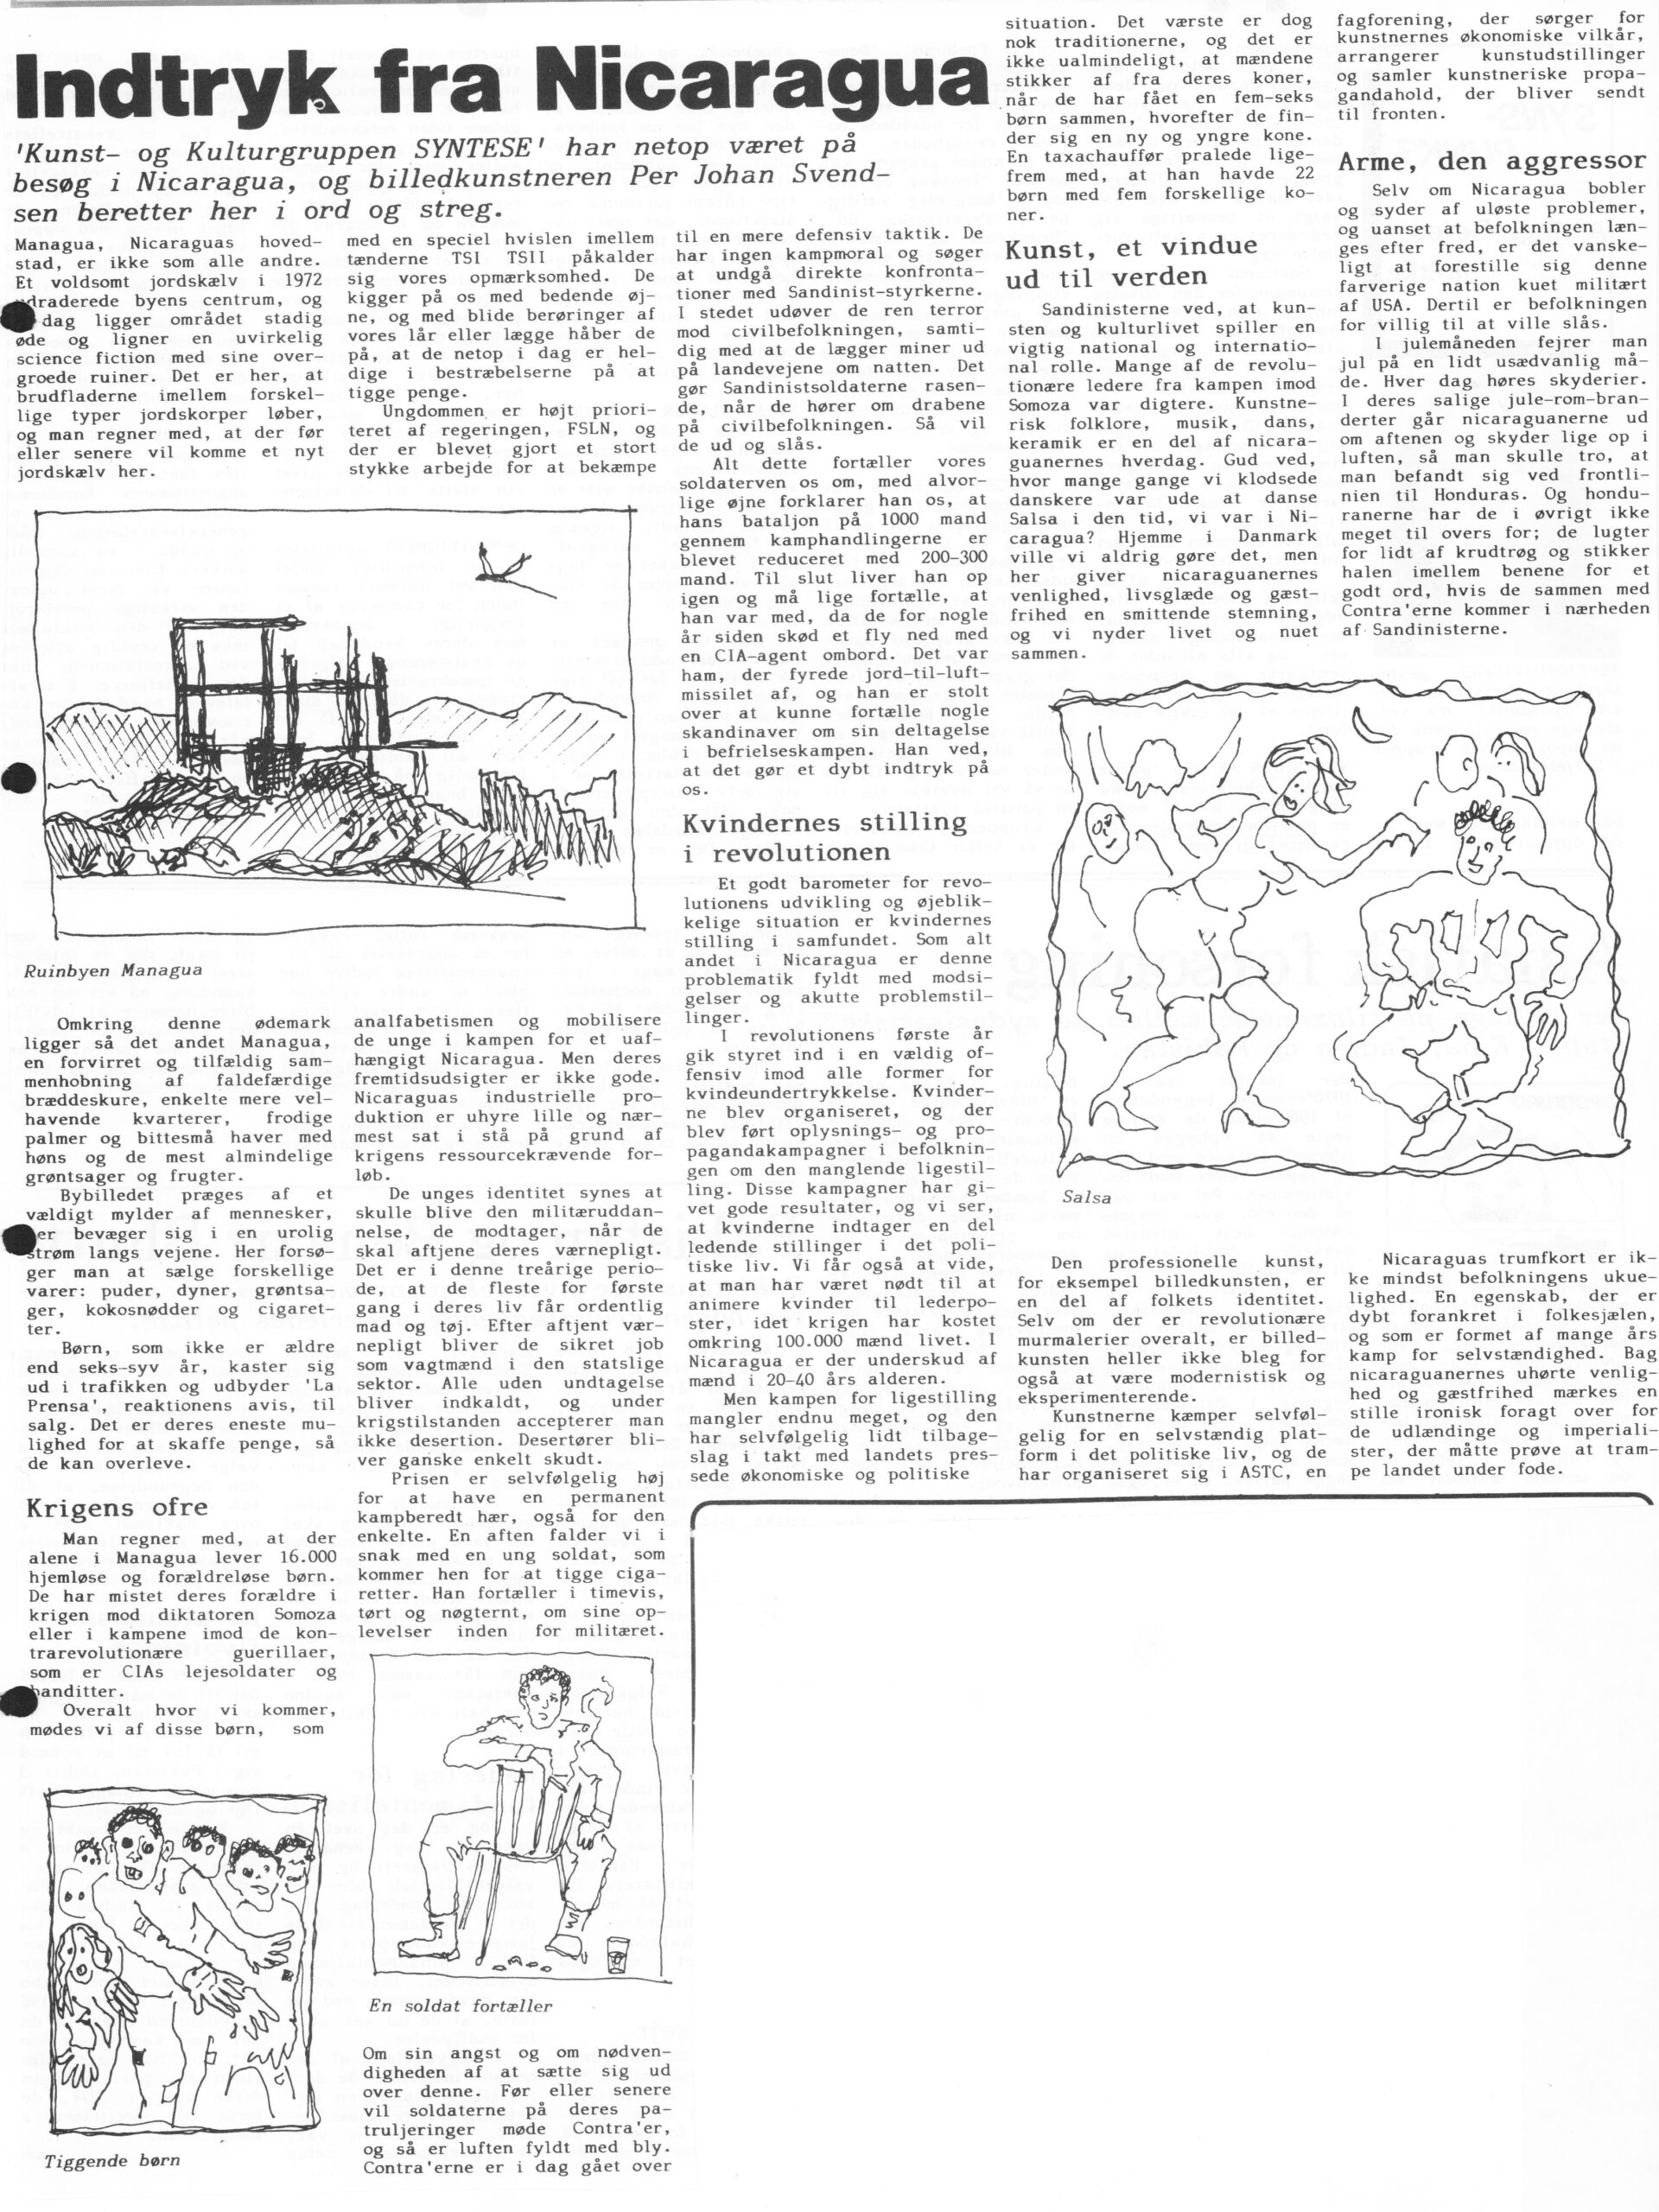 Indtryk fra Nicaragua. Artikel. Per Johan Svendsen. Arbejderavisen. Medio januar 1989.